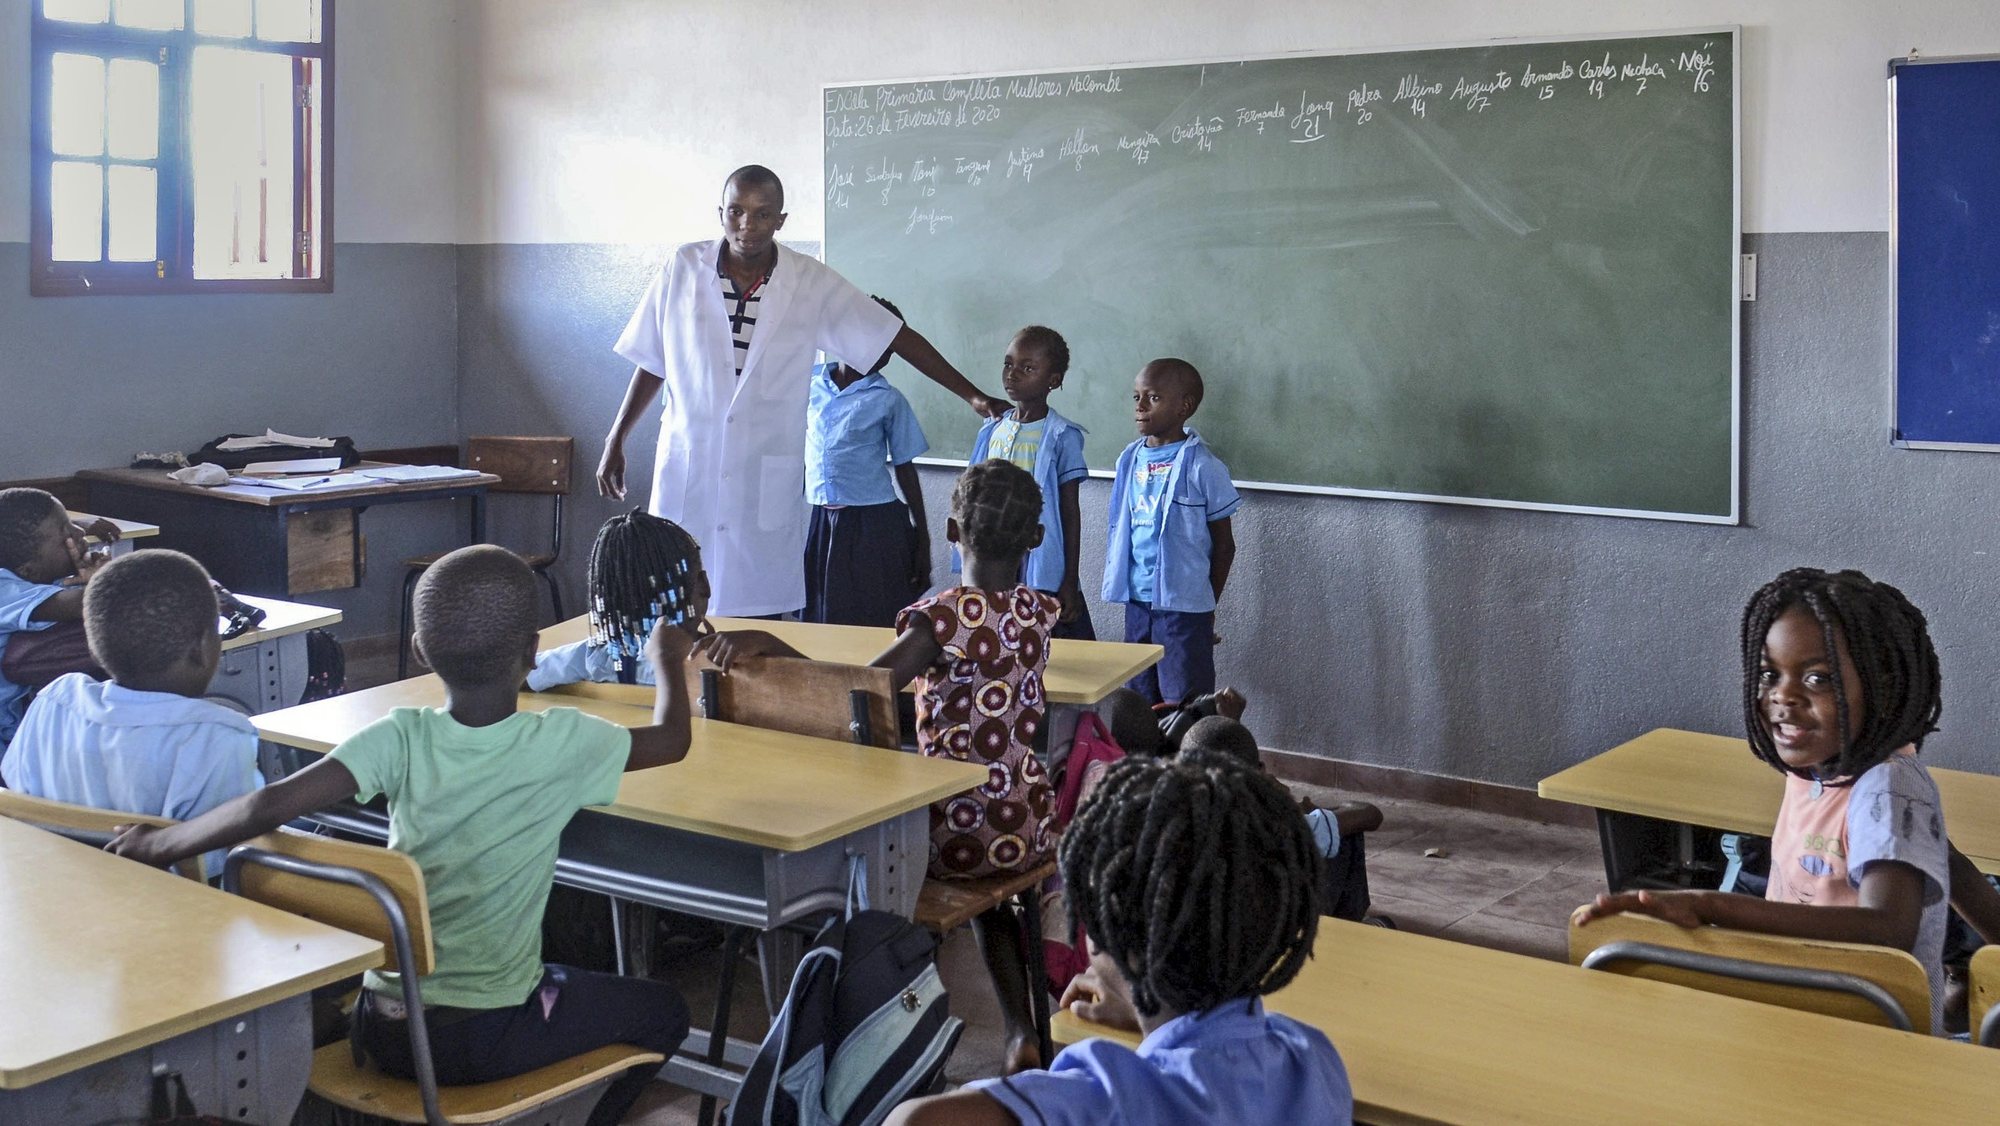 Interior de uma sala de aulas da Escola Primária Completa 12 de outubro da cidade da Beira, Moçambique, 26 de fevereiro de 2020. A Escola Primária Completa 12 de outubro da cidade da Beira é uma das que tem mais alunos na capital provincial, cerca de 4.000, e foi também uma das mais destruídas pelo ciclone Idai. (ACOMPANHA TEXTO DO DIA 10 DE MARÇO DE 2020). ANTÓNIO SILVA/LUSA